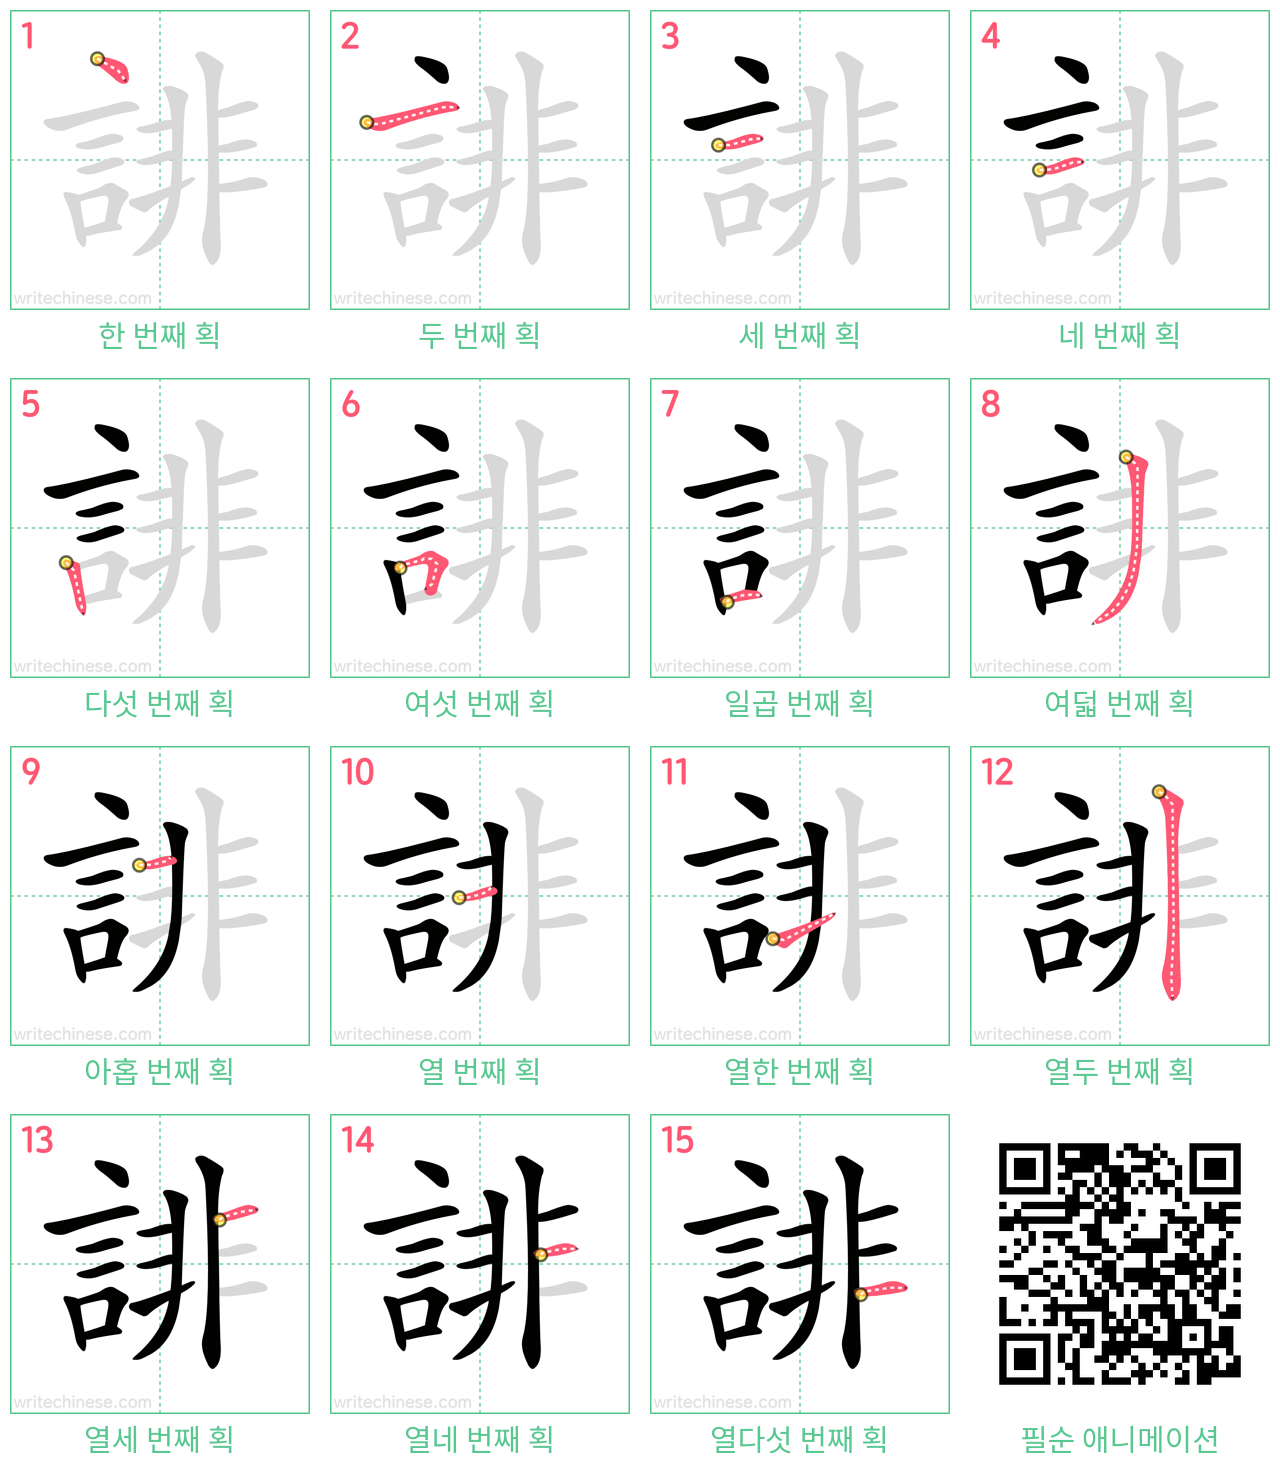 誹 step-by-step stroke order diagrams